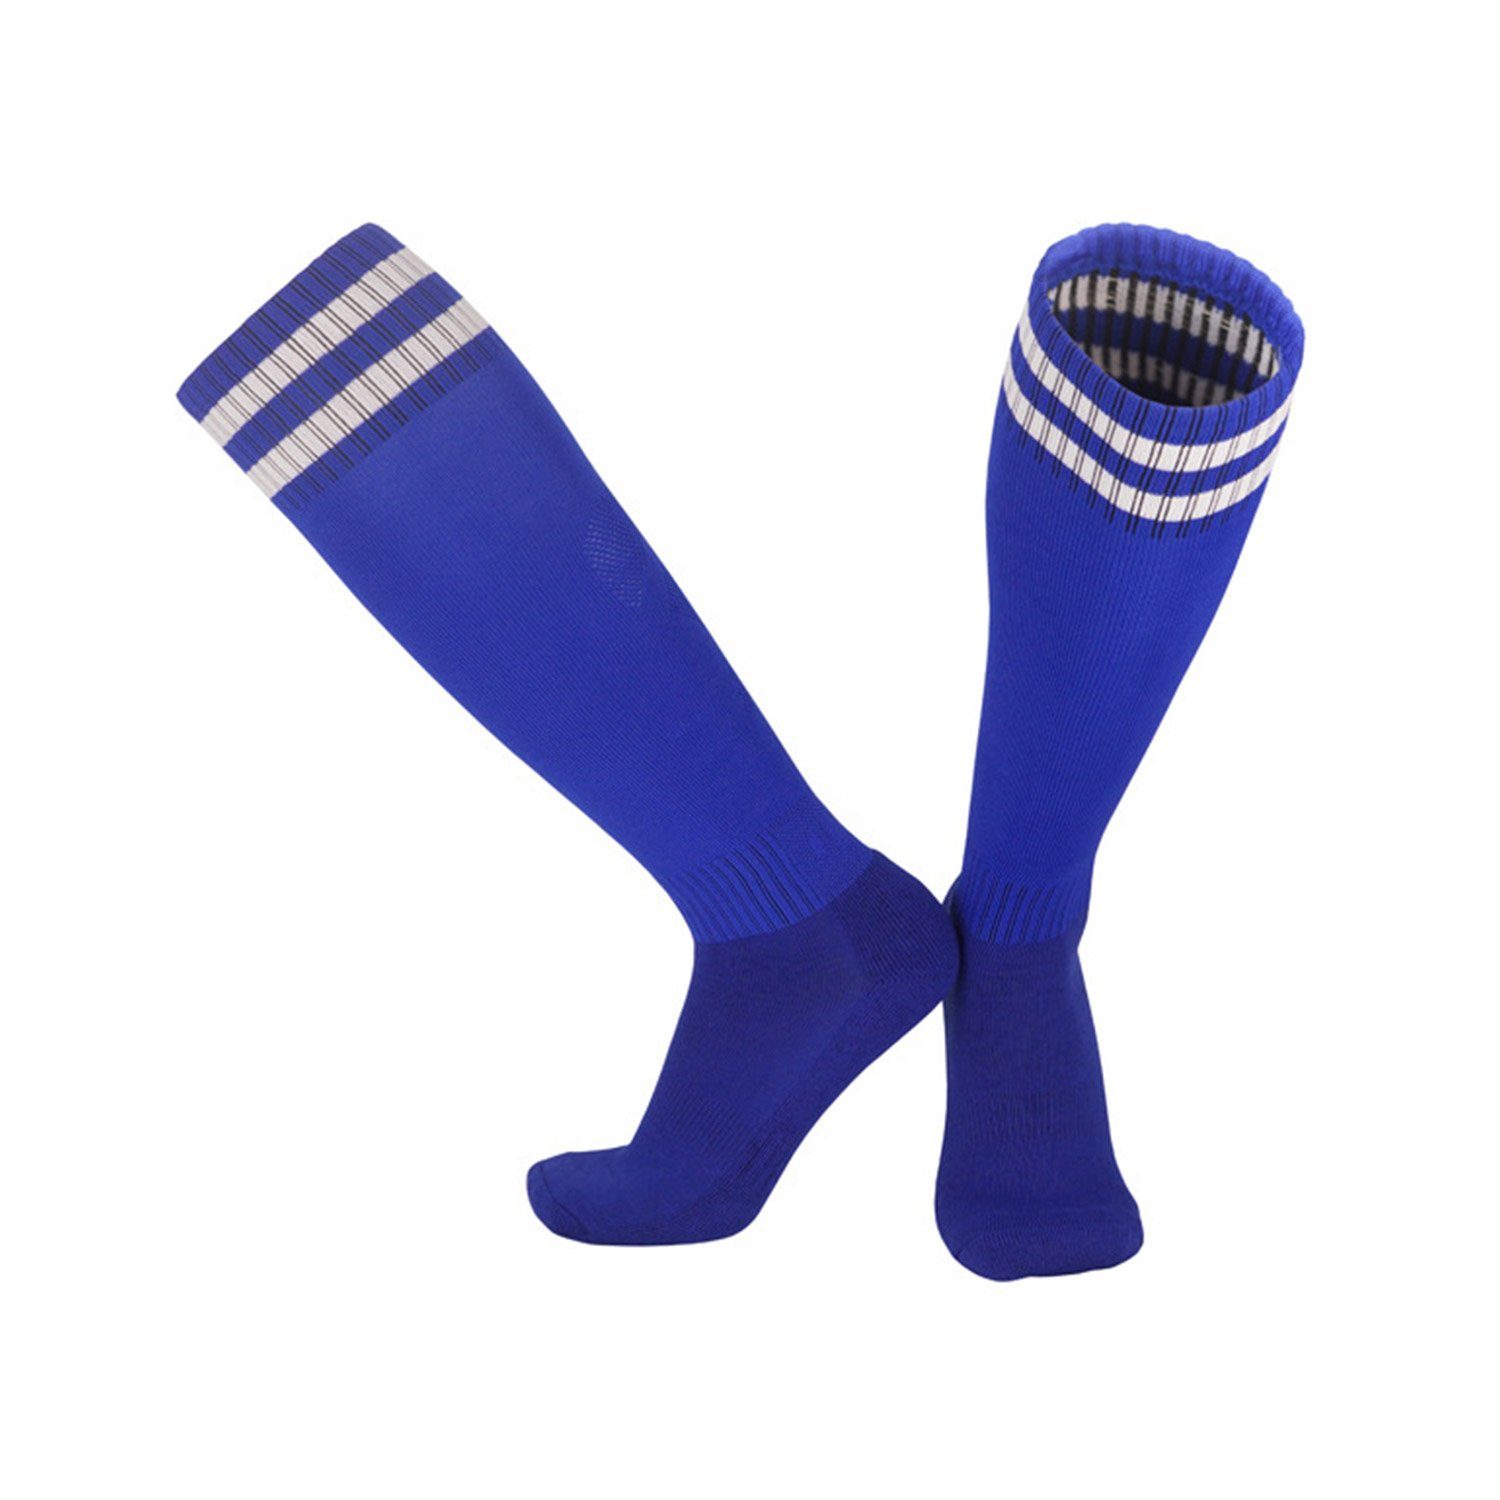 und Kinderfußball Neutral Socken Socken Training Bewegung Fadenfäden Blau Sportsocken für Fußballtraining, -Socken MAGICSHE Erwachsene Laufen